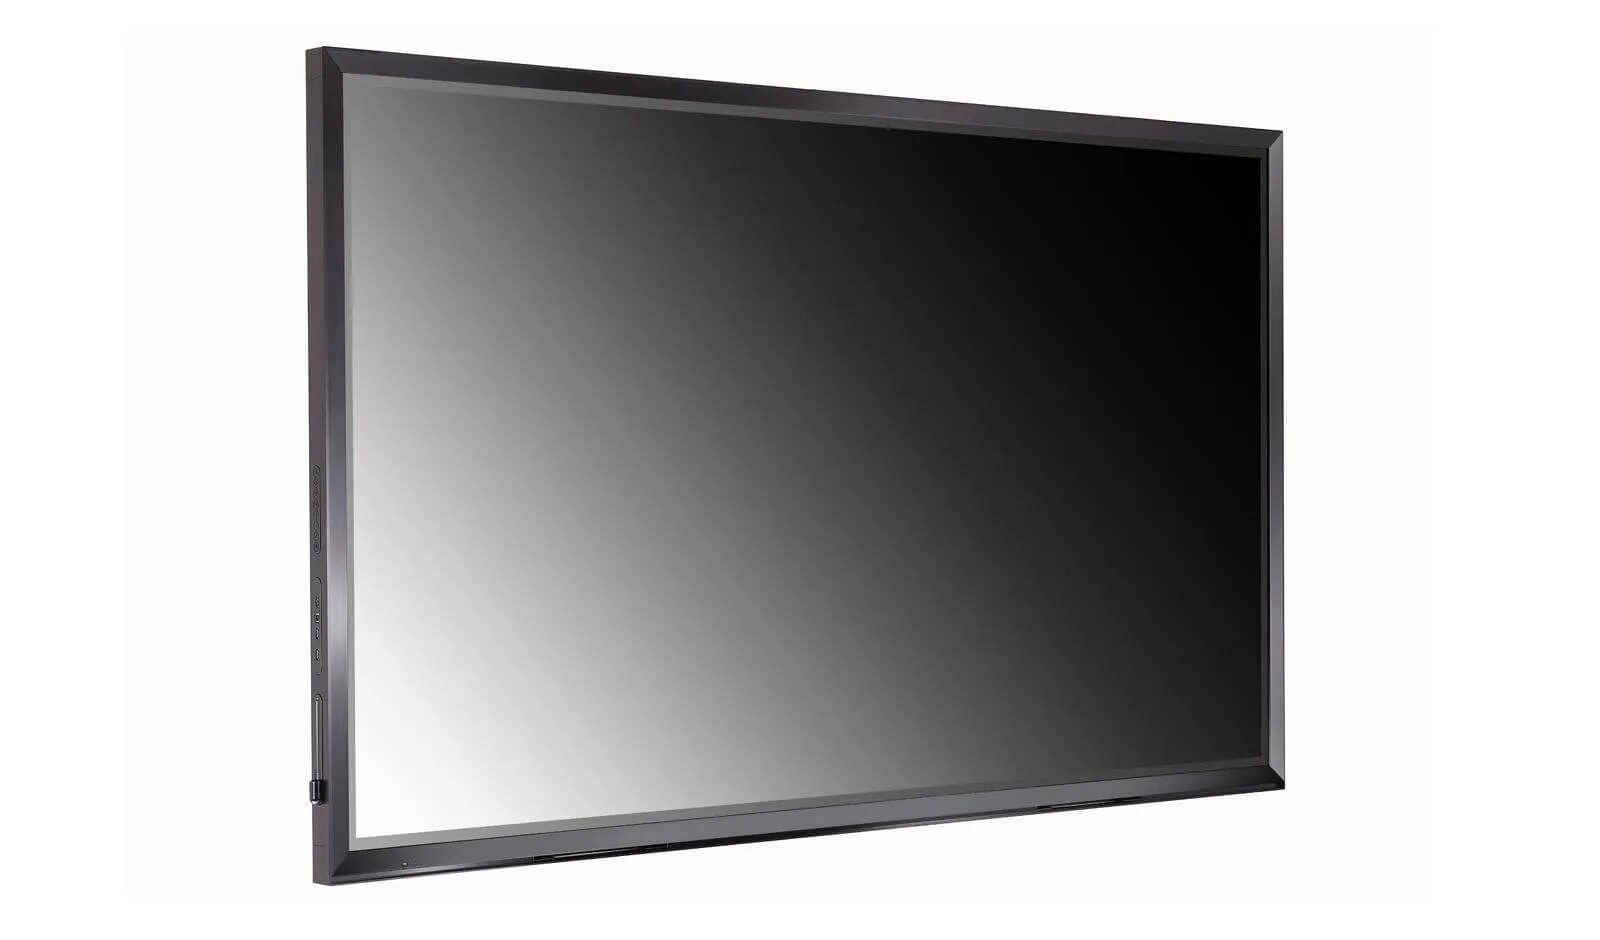 86 дюймов купить. Интерактивная панель ( 75tr3bf-b) LG IPS, 3840x2160. LG 86. Интерактивная ЖК панель 86 дюймов jq86mw-b15. Телевизор LG 86 дюймов.